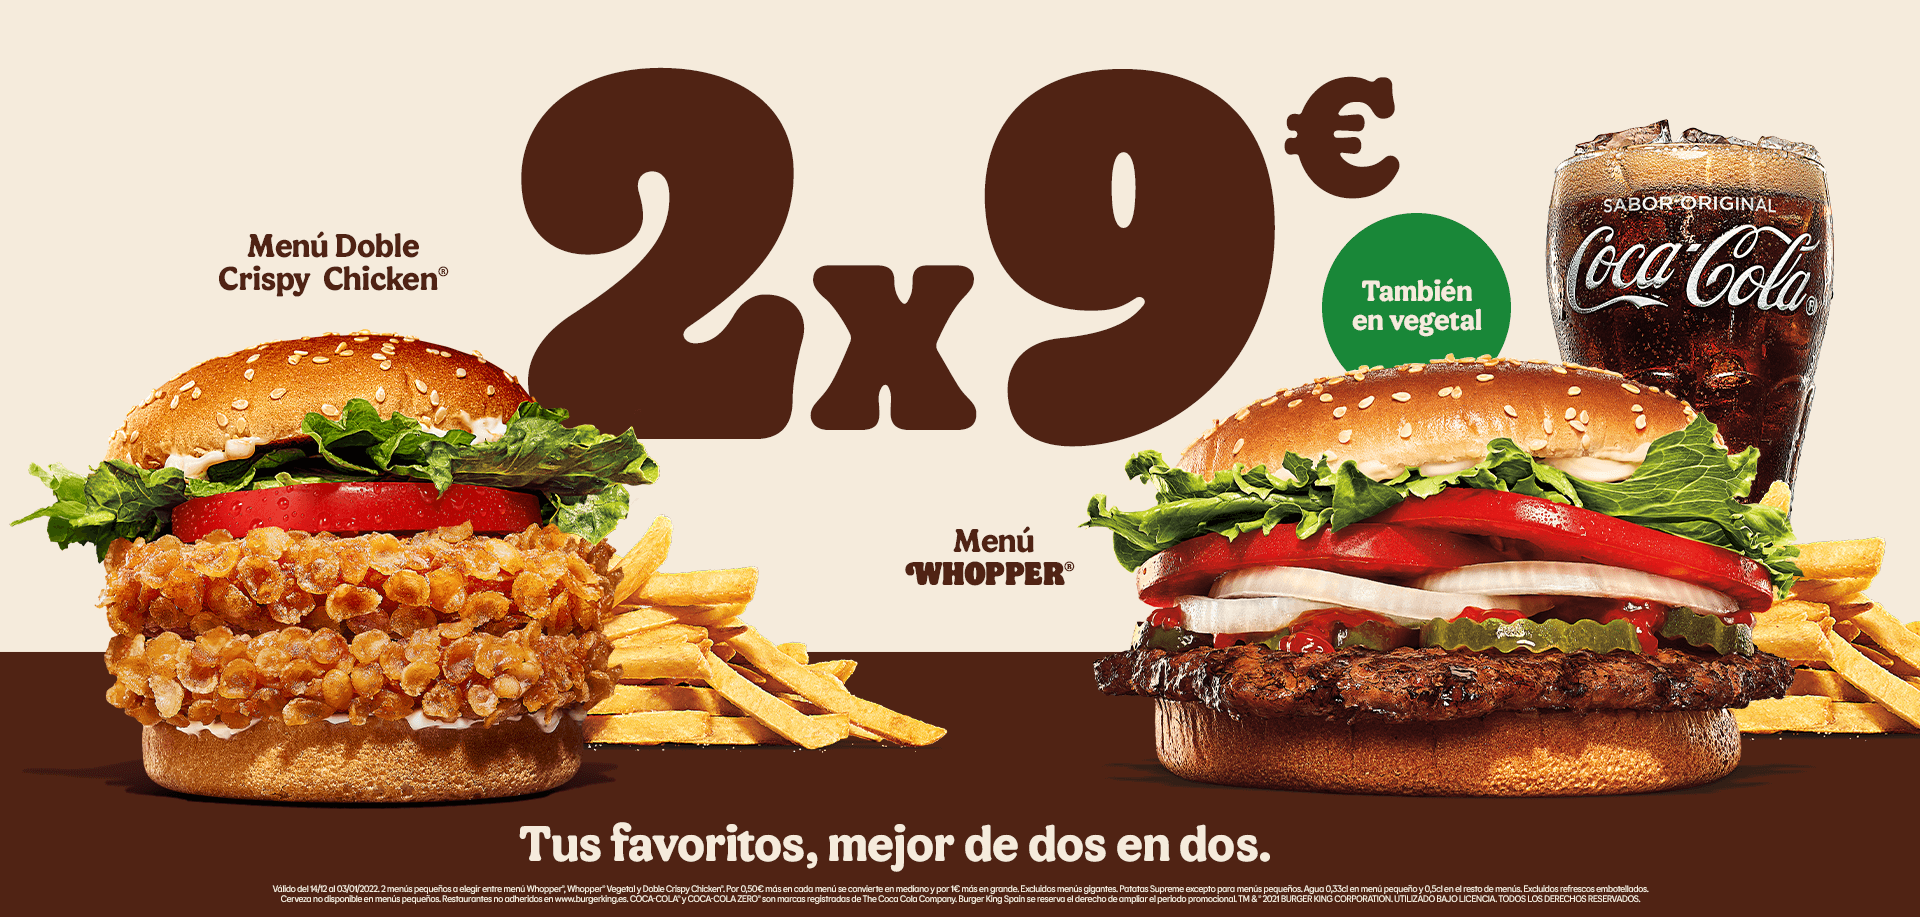 2 menús pequeños a elegir entre menú Whopper, Whopper Vegetal y Doble Crispy Chicken por 9€ en Burger King (oferta válida en pedidos en restaurante)